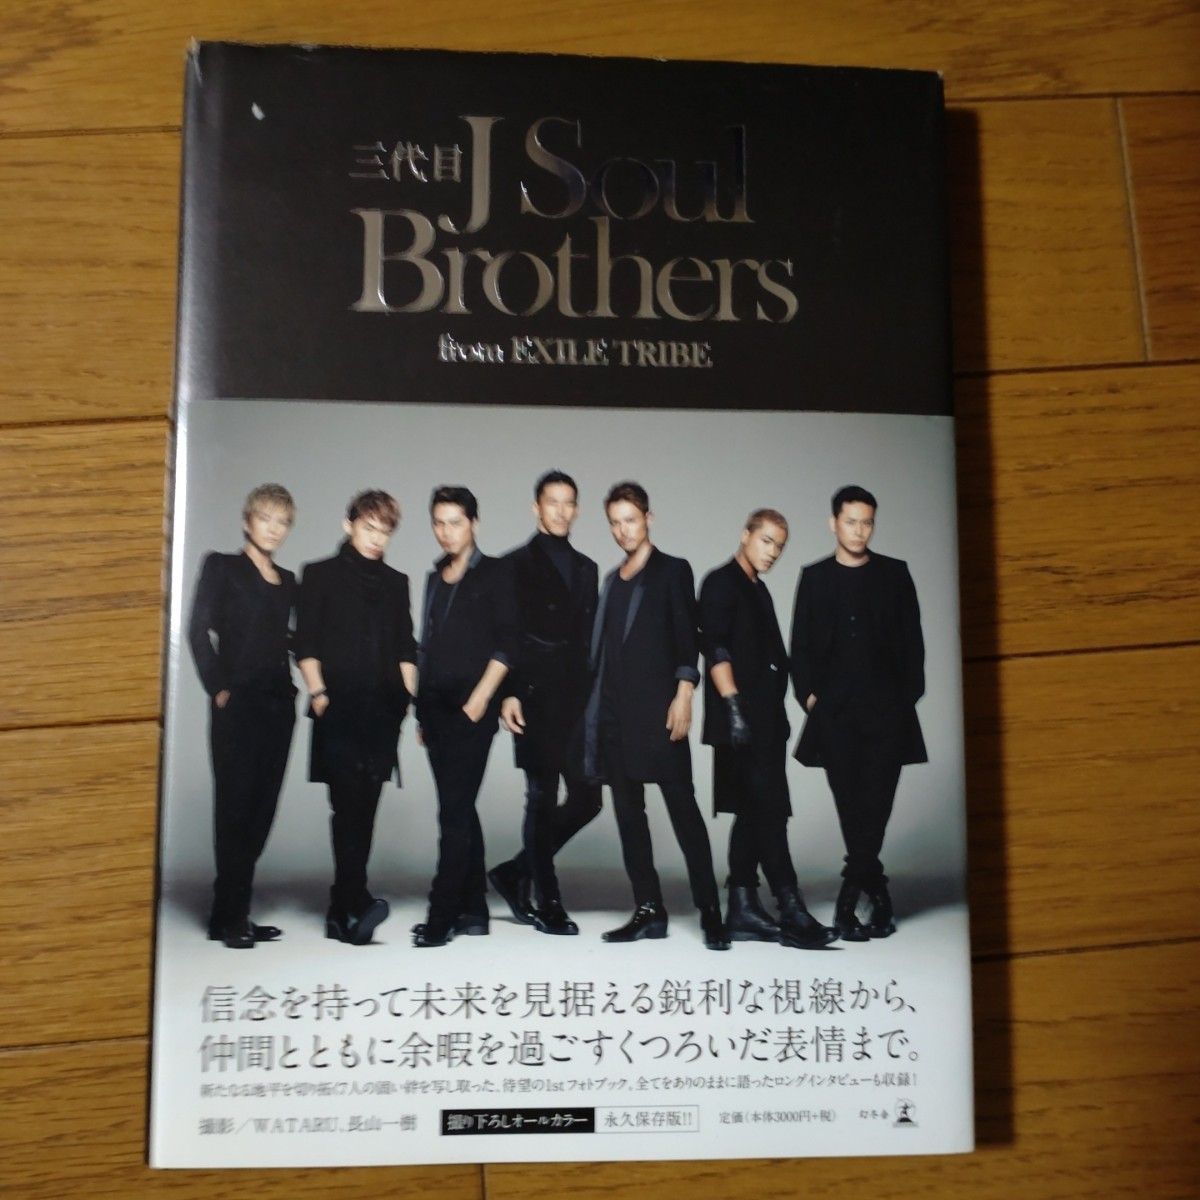 「三代目J Soul Brothers from EXILE TRIBE」